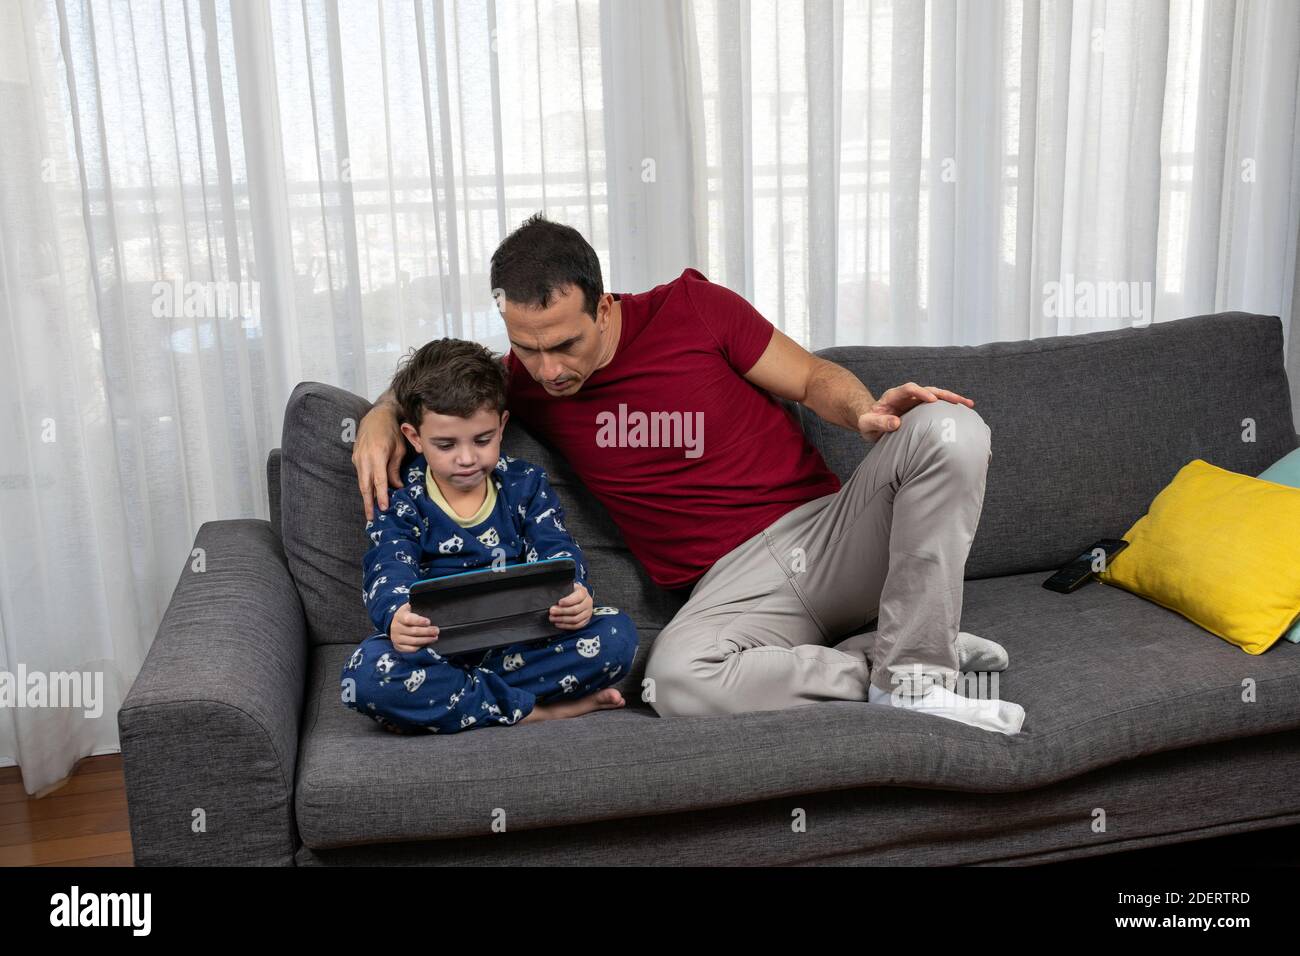 Hombre maduro (44 años) sentado junto a su hijo (6 años) viendo una película juntos. Foto de stock